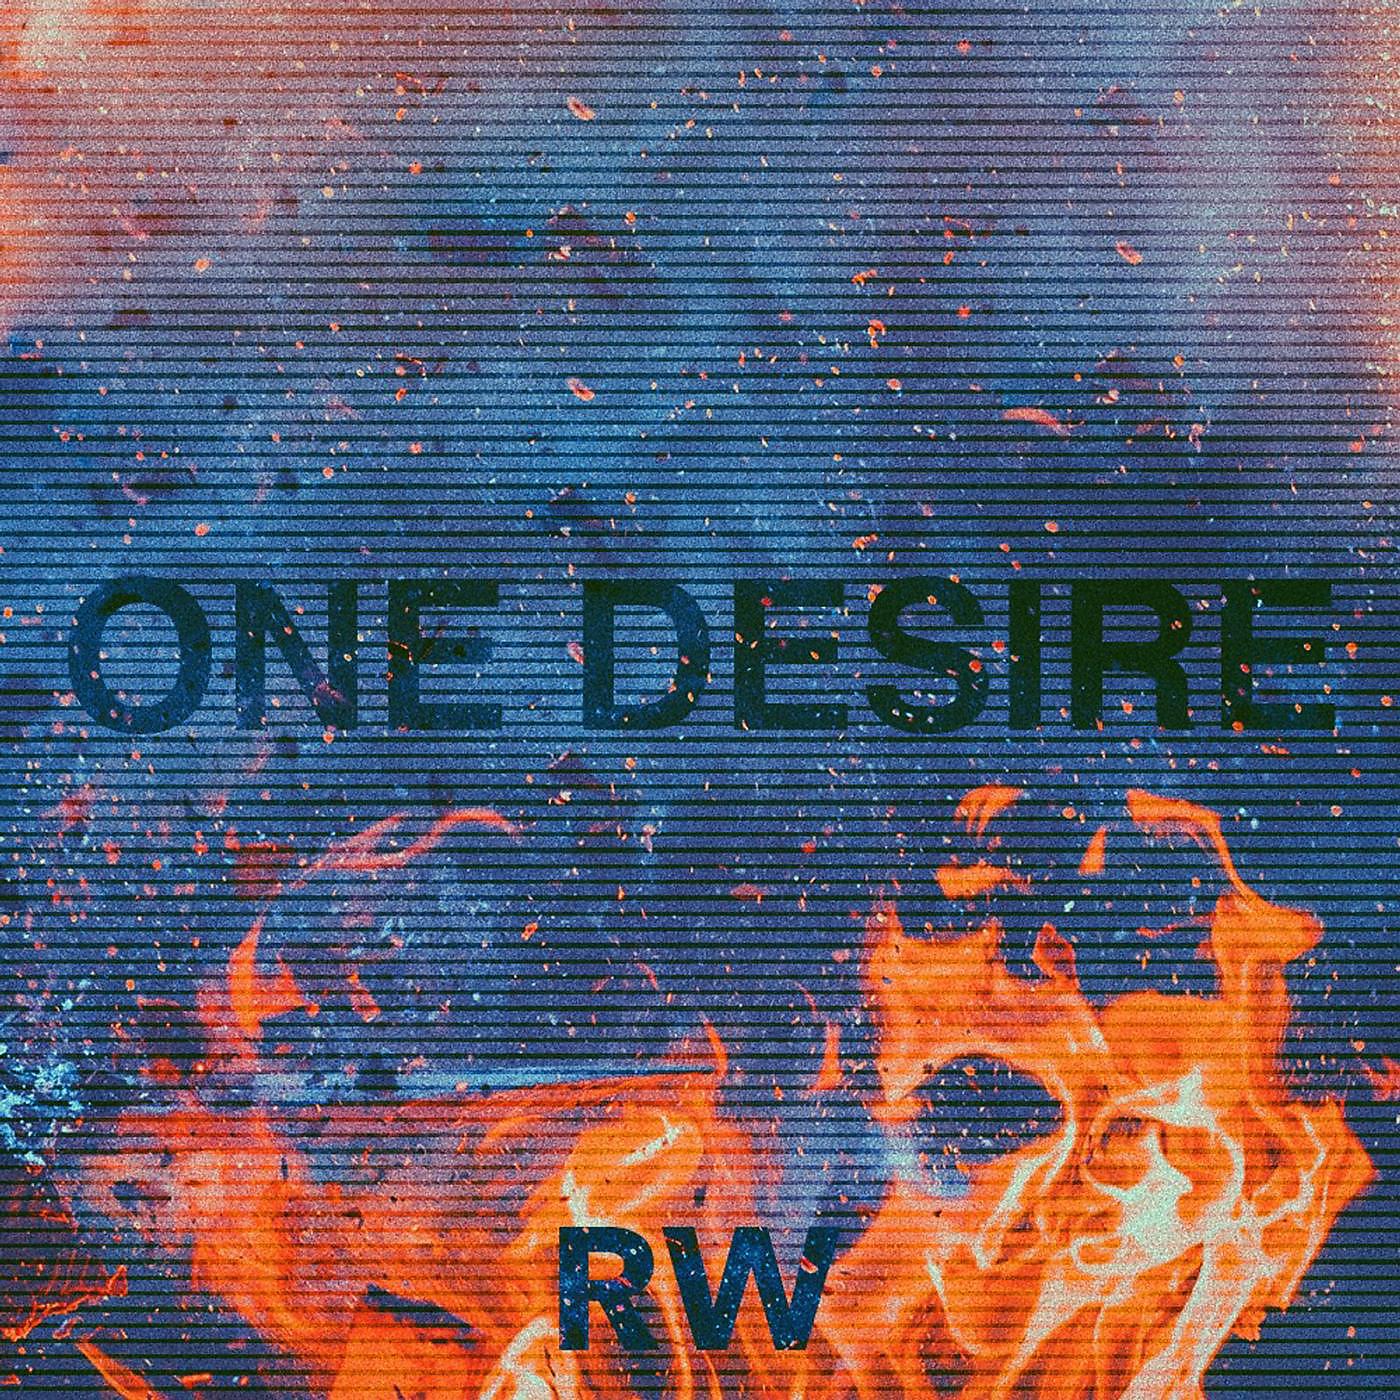 Постер альбома One Desire